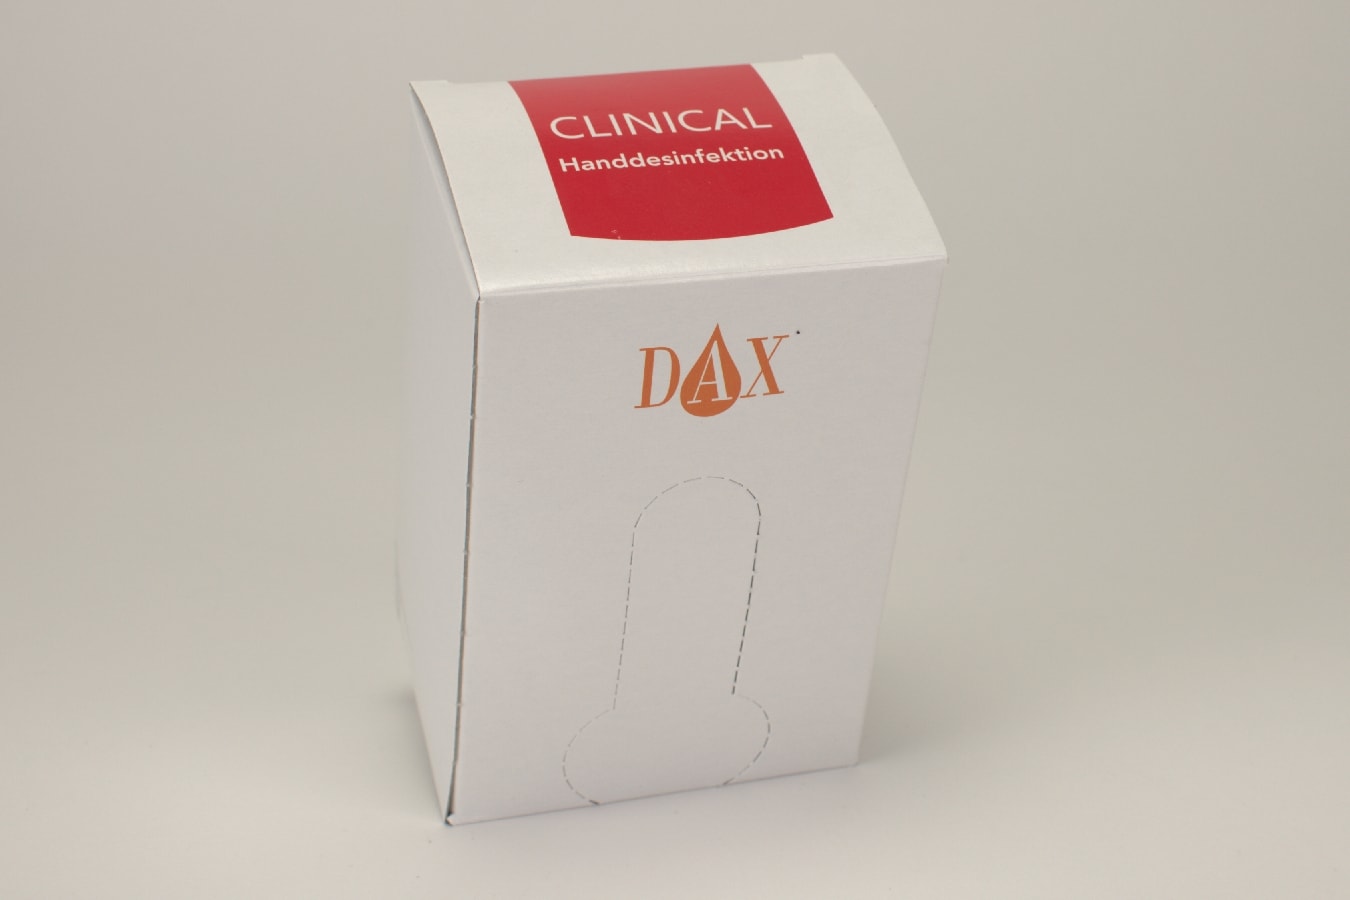 DAX Clinical Handdesinfektion 700ml för Dispenser